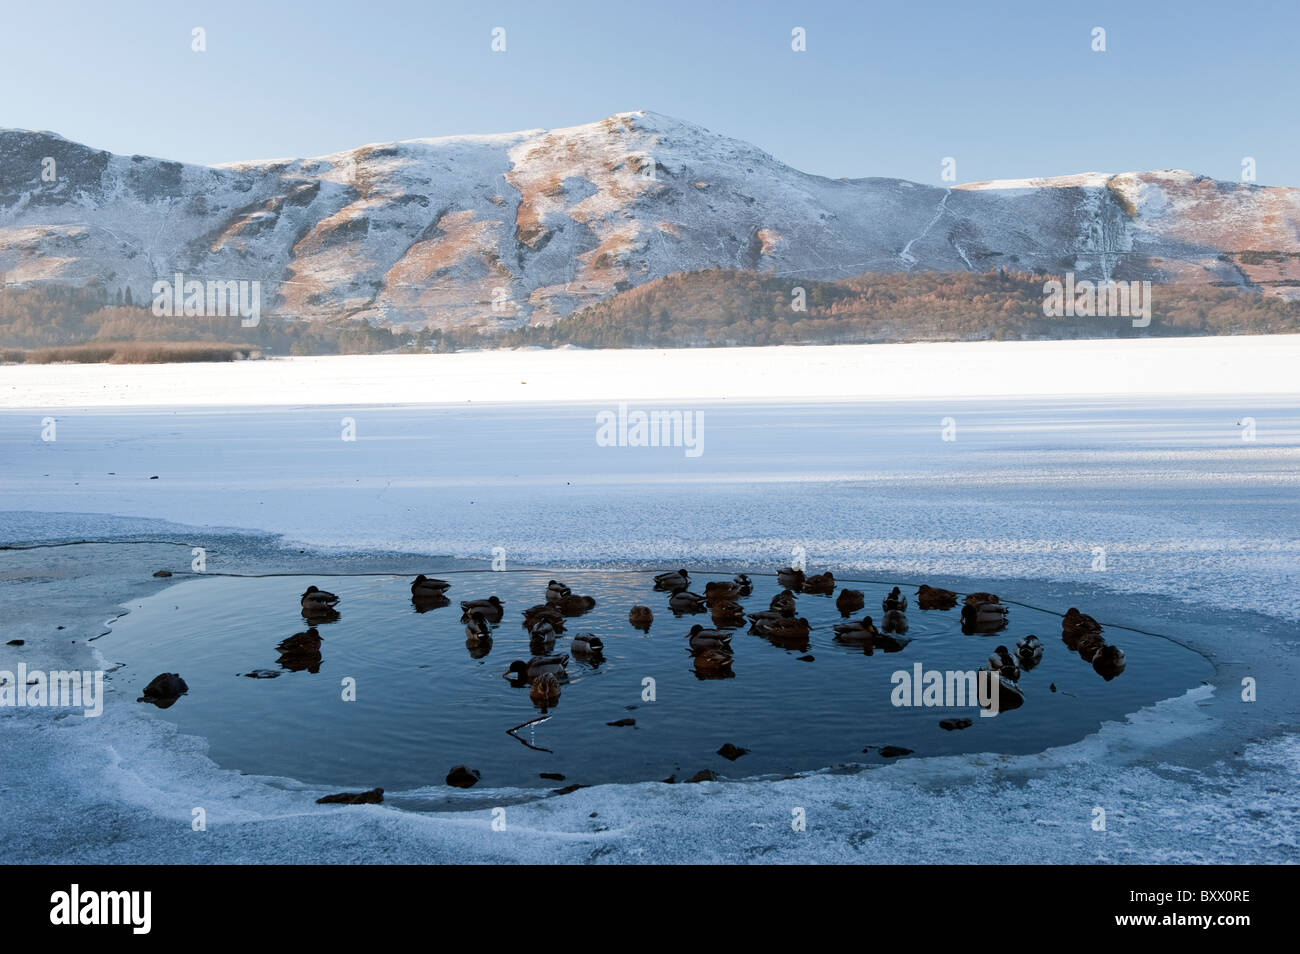 Gregge di le anatre bastarde seduti in acqua, mentre il resto del lago è ghiacciato. Foto Stock